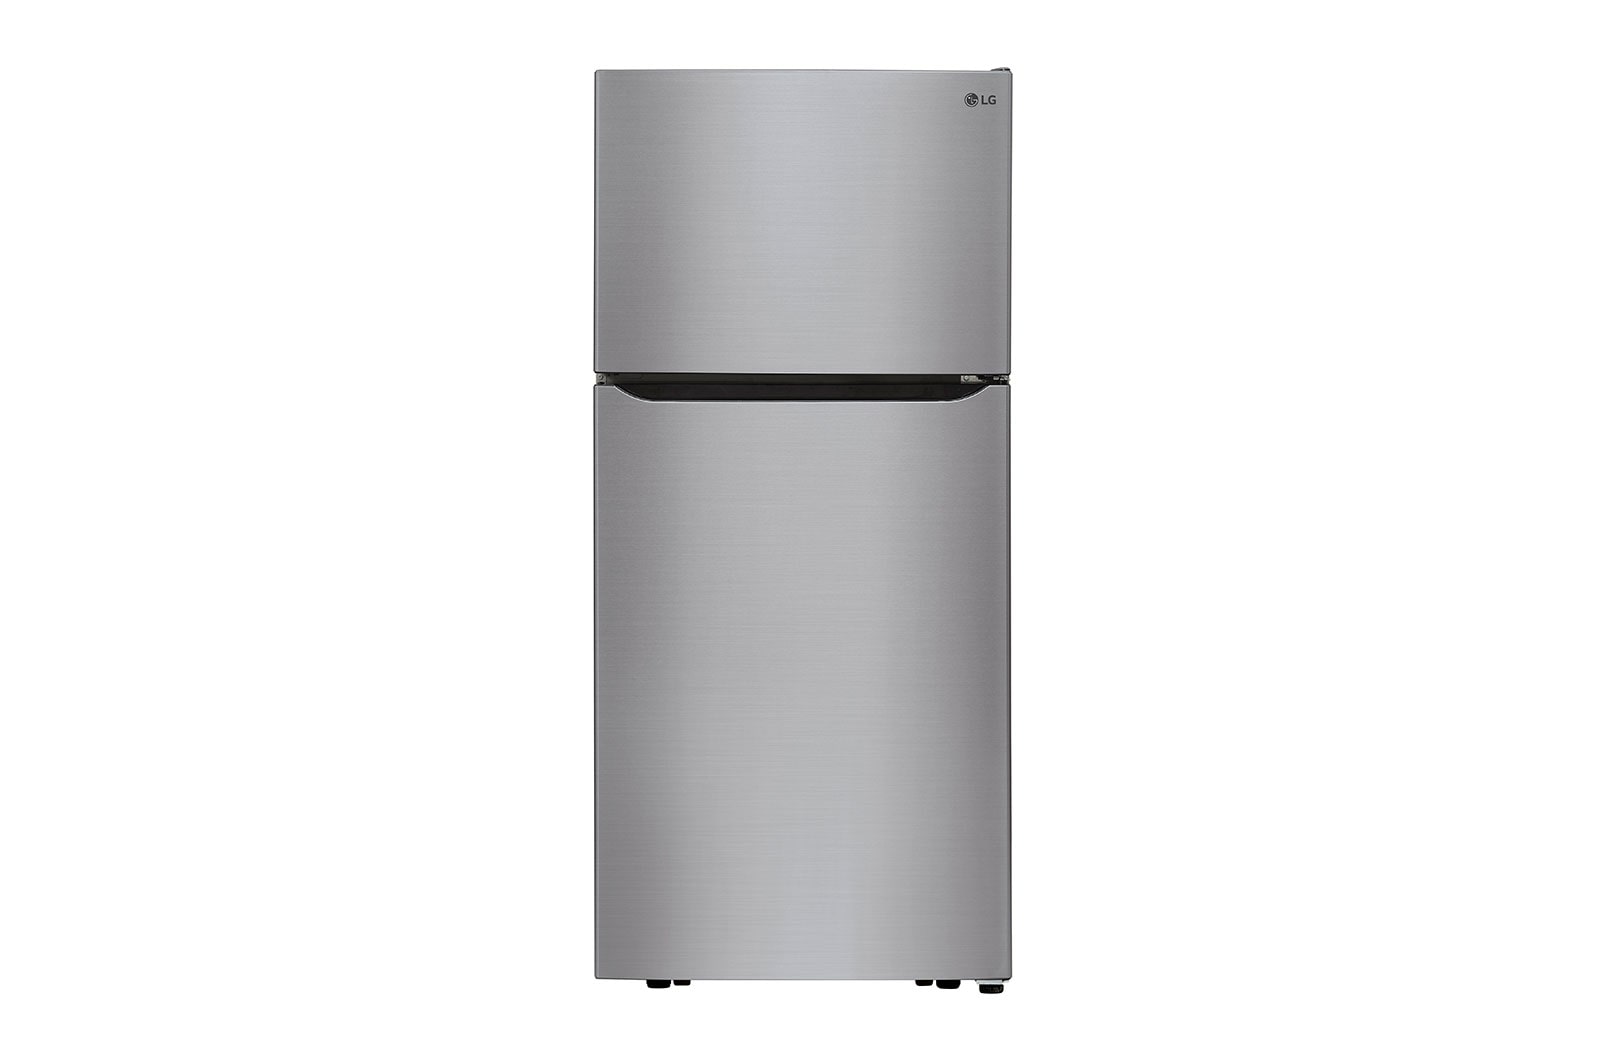 Réfrigérateur avec congélateur en haut de 20 pi3 d'une largeur de